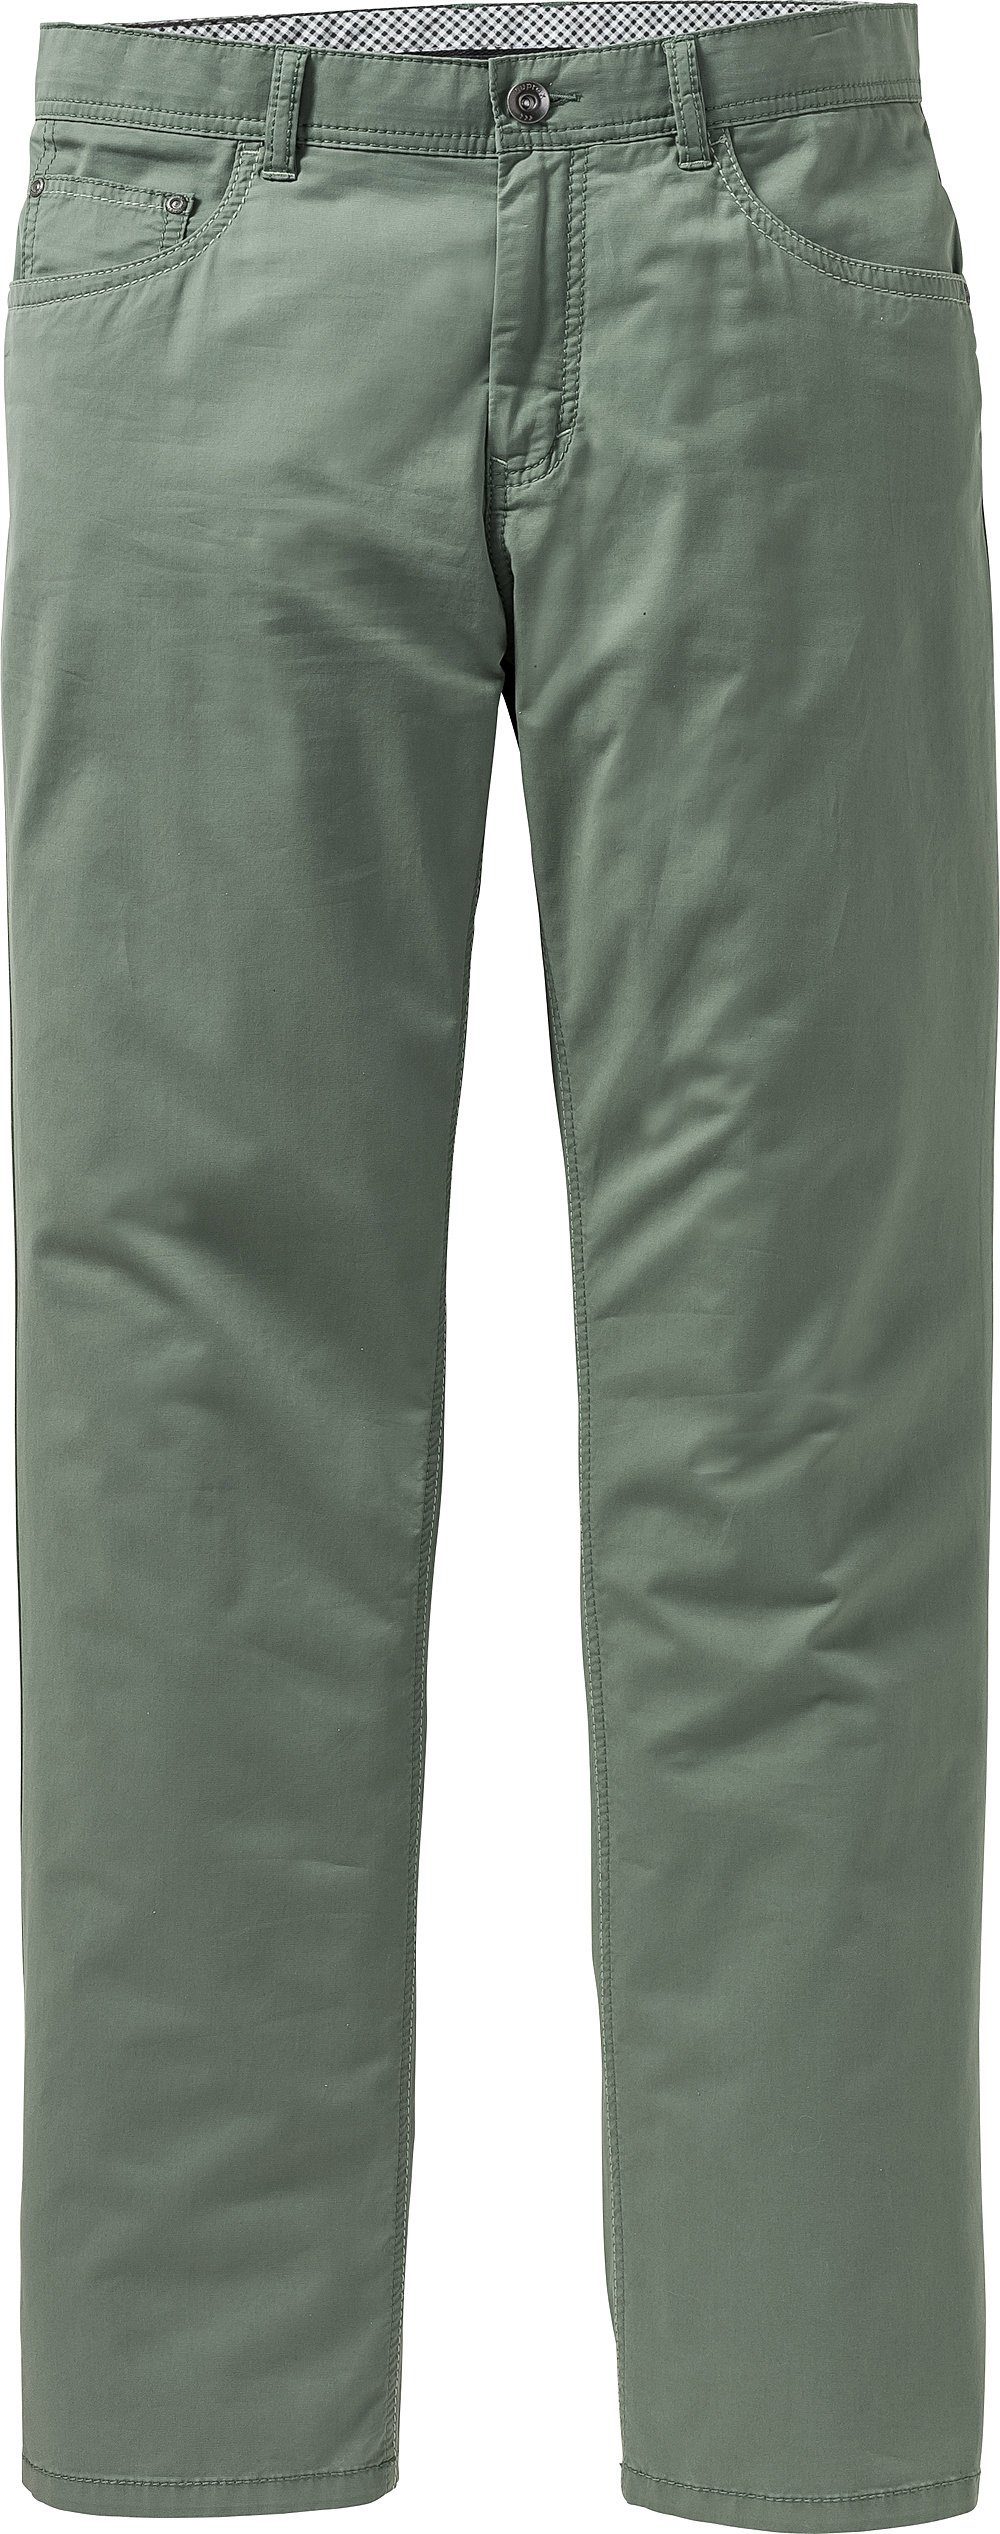 Suprax 5-Pocket-Hose weich, grün leicht und luftig sensationell